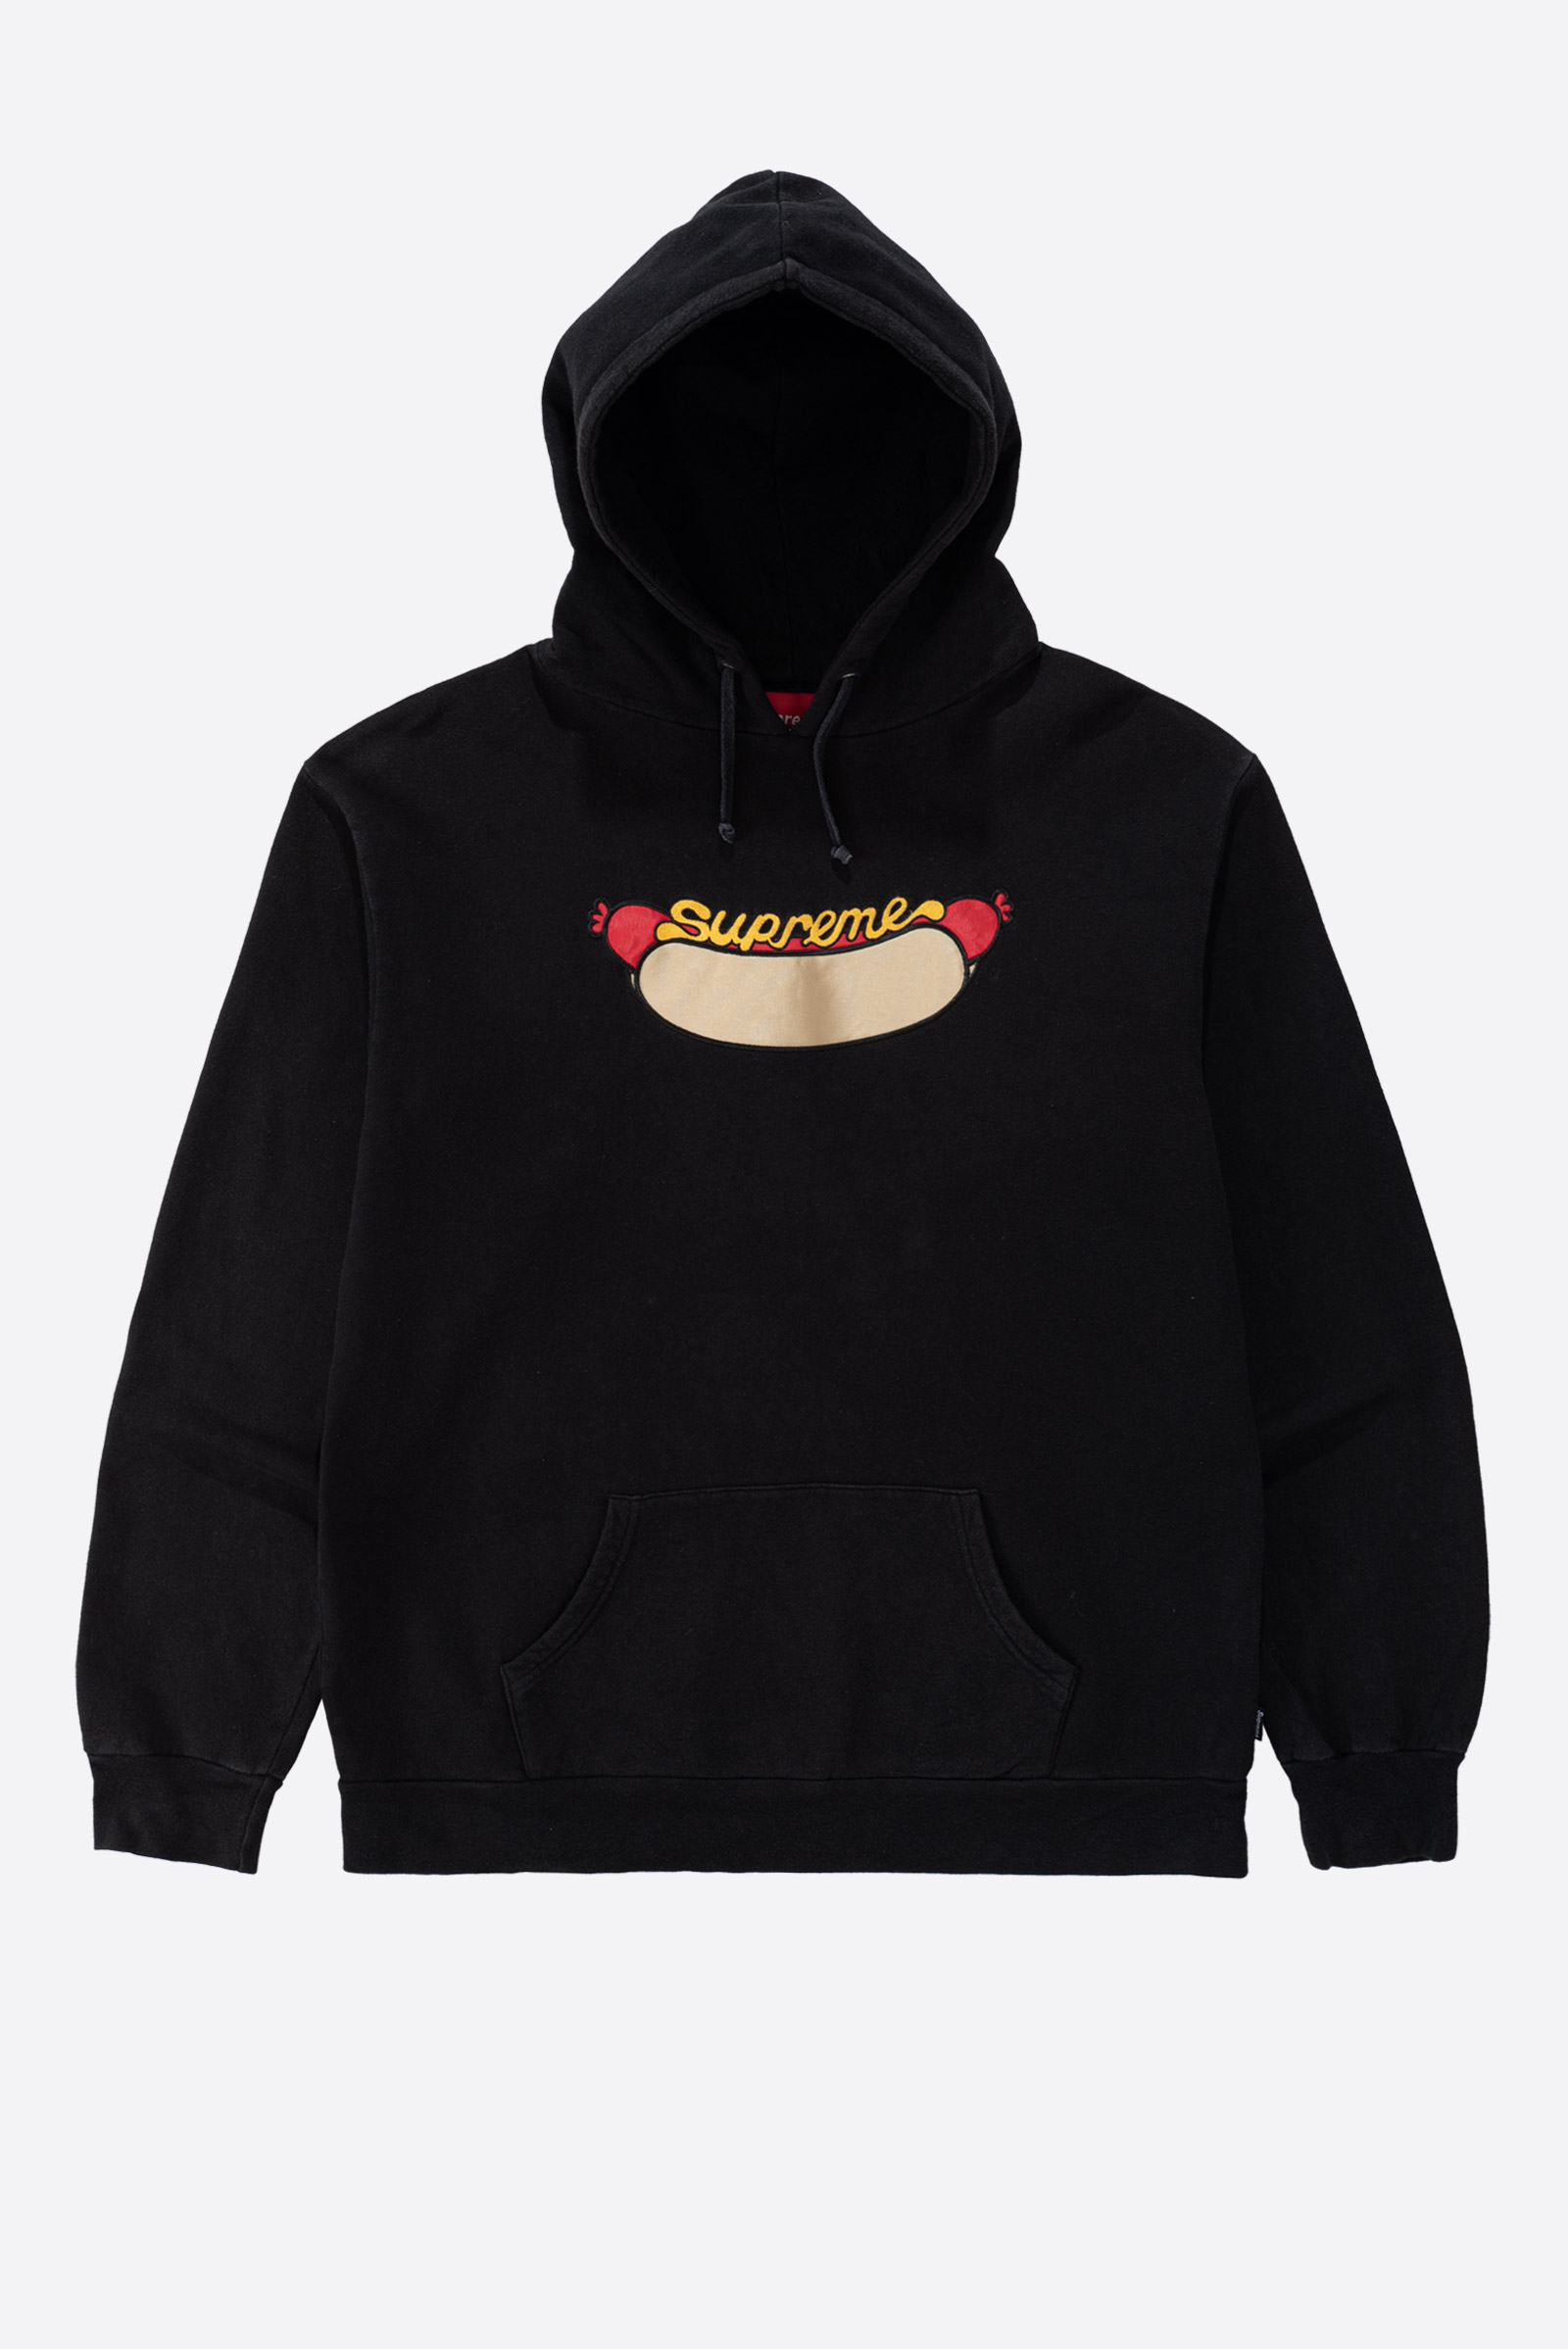 Supreme Hot Dog Hooded Sweatshirt